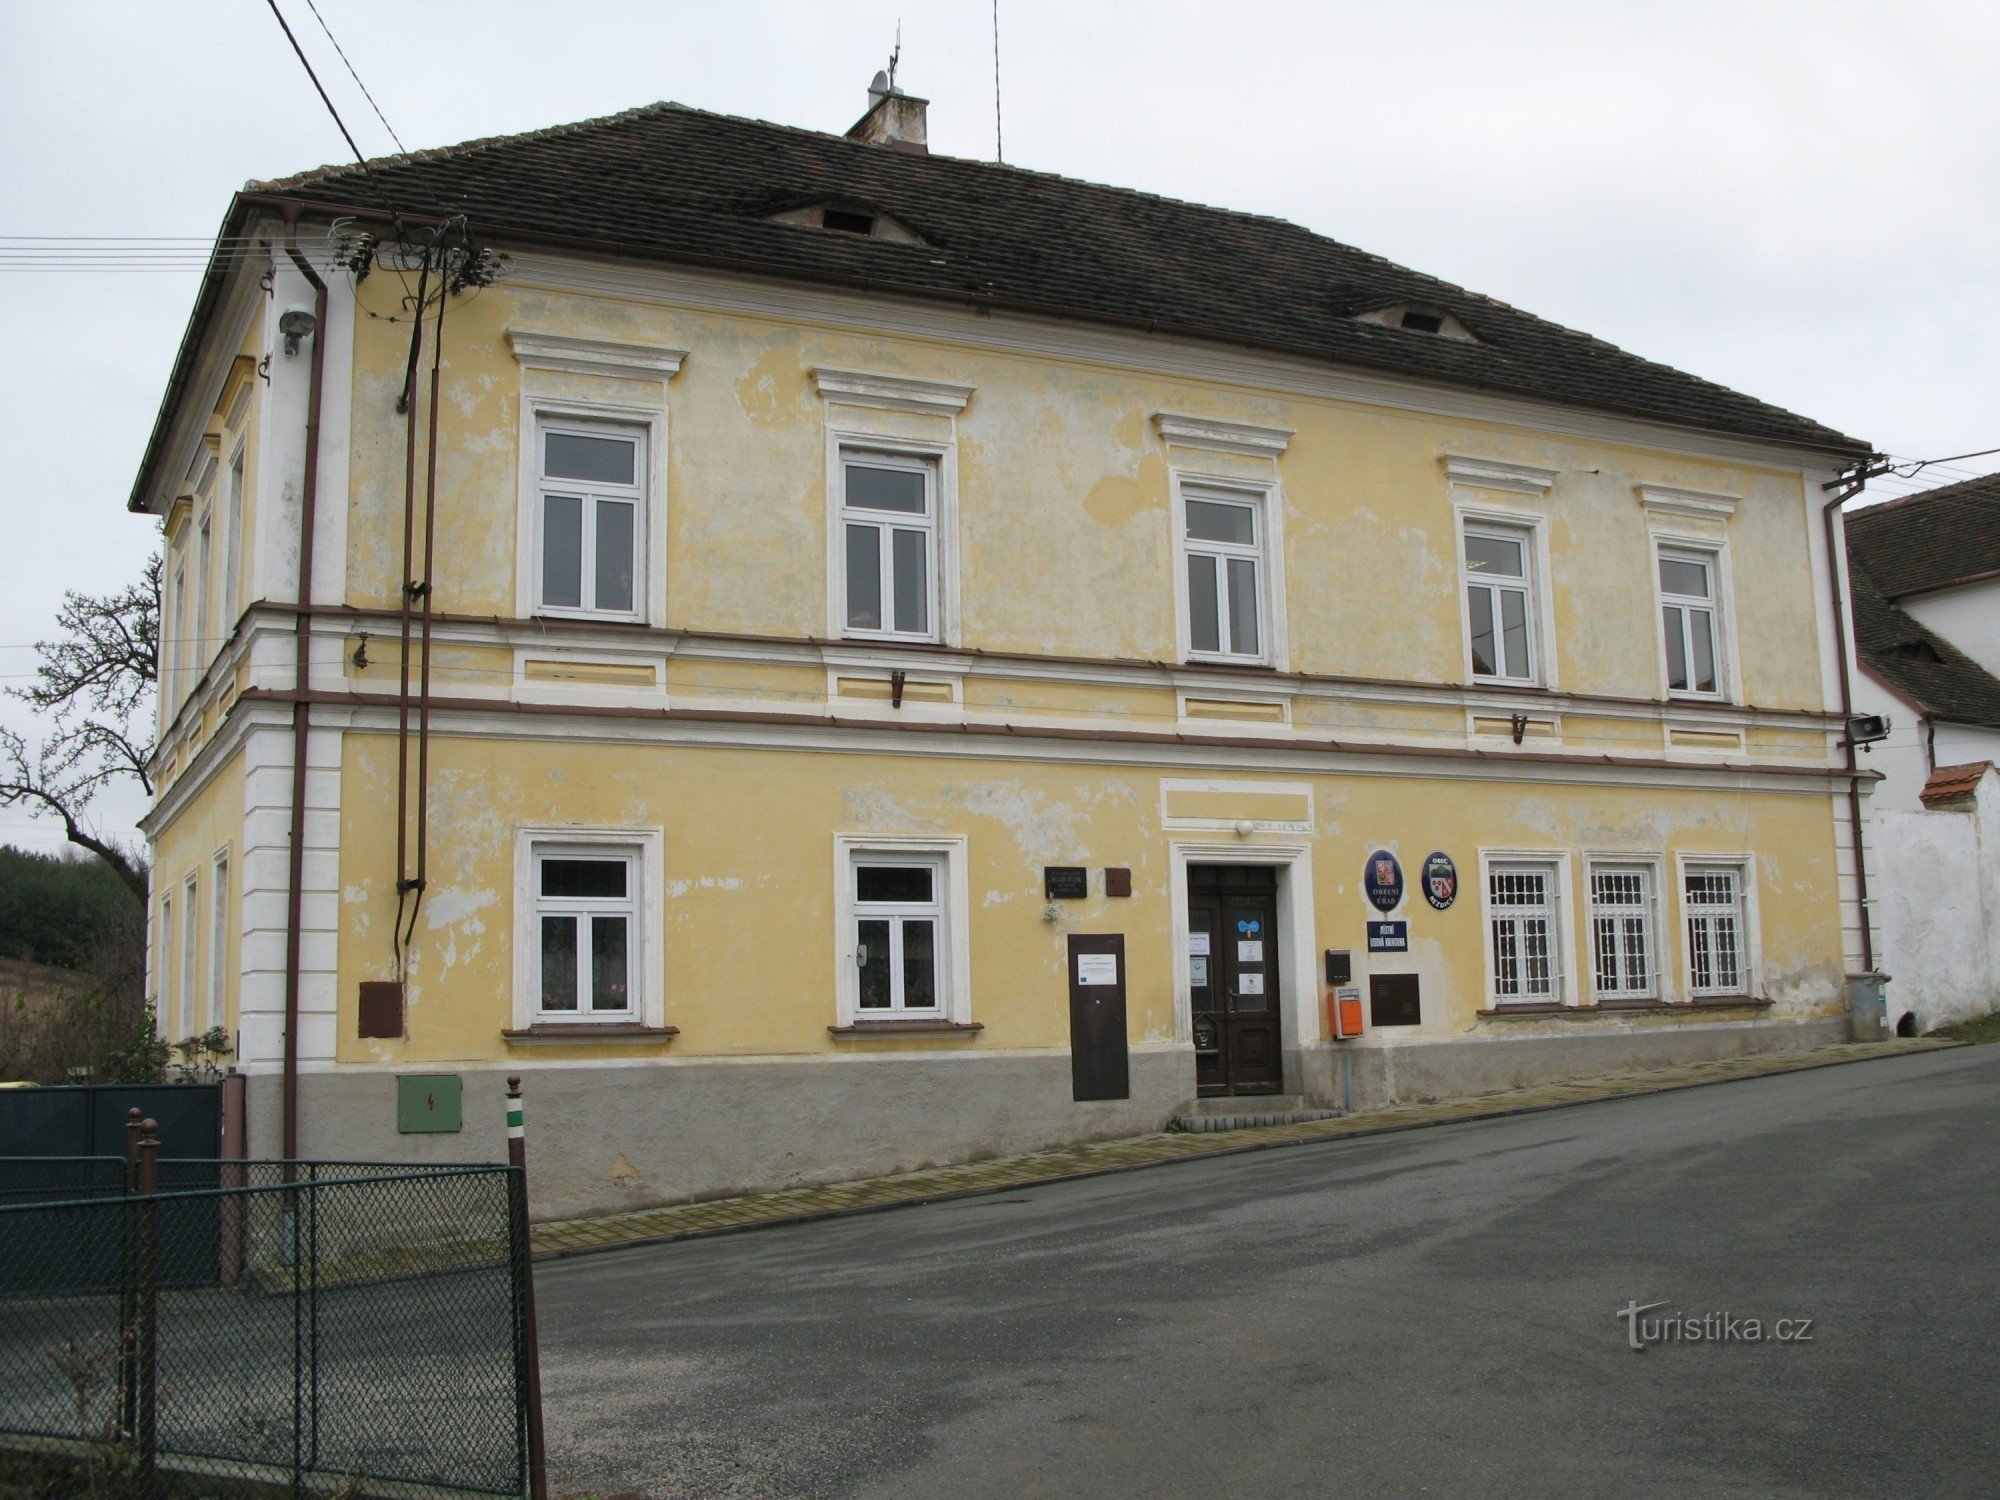 Nezdice - văn phòng thành phố, trường thành phố cũ từ năm 1847